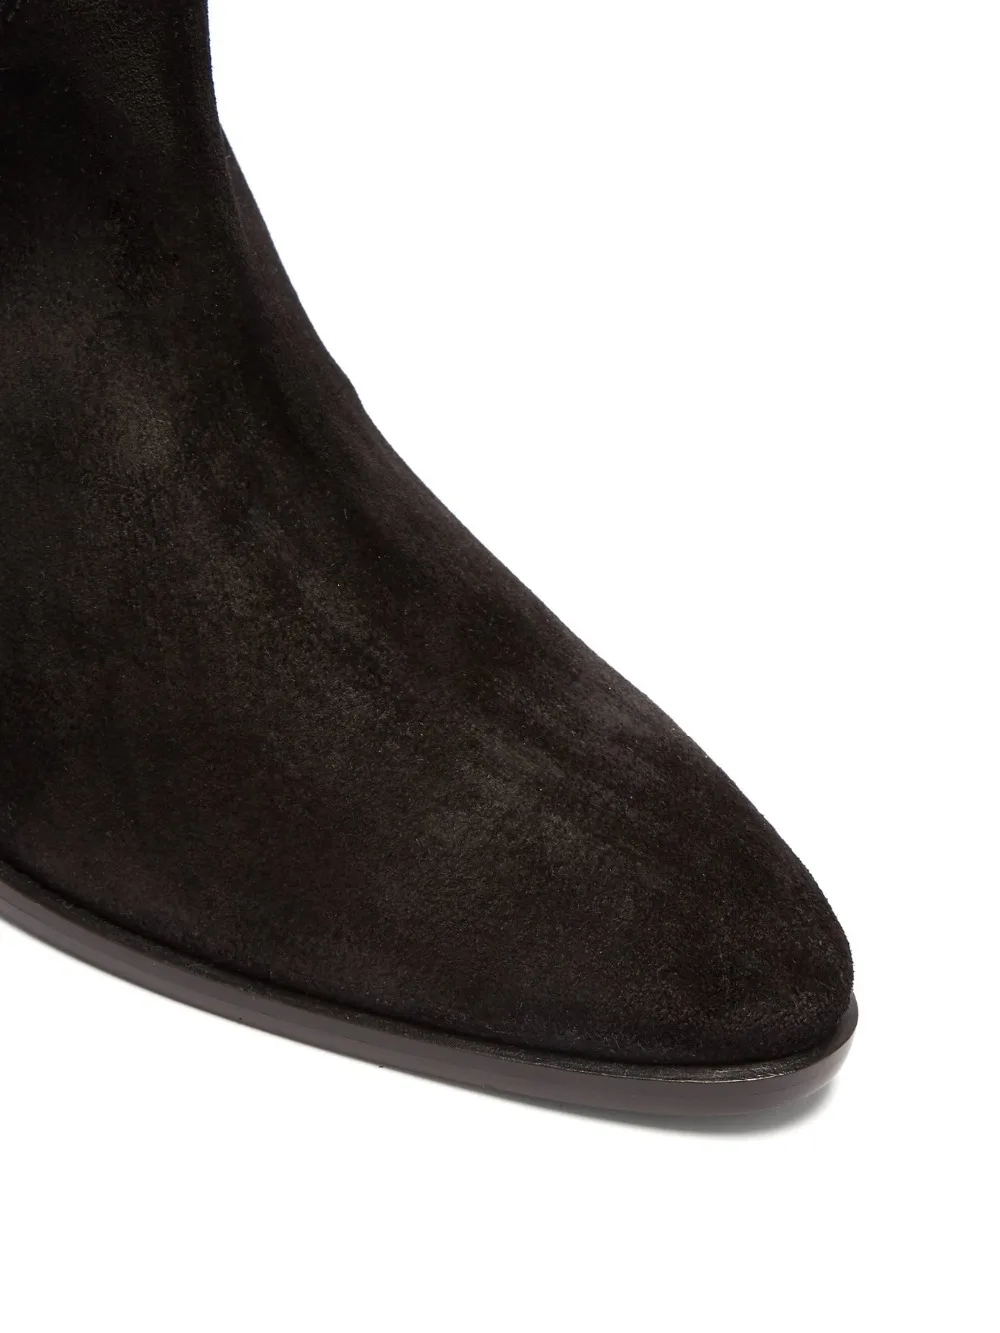 Женские сапоги выше колена из черной замши; роскошные высокие сапоги на высоком массивном каблуке 4,5 см; botines mujer; зимняя женская обувь с бахромой